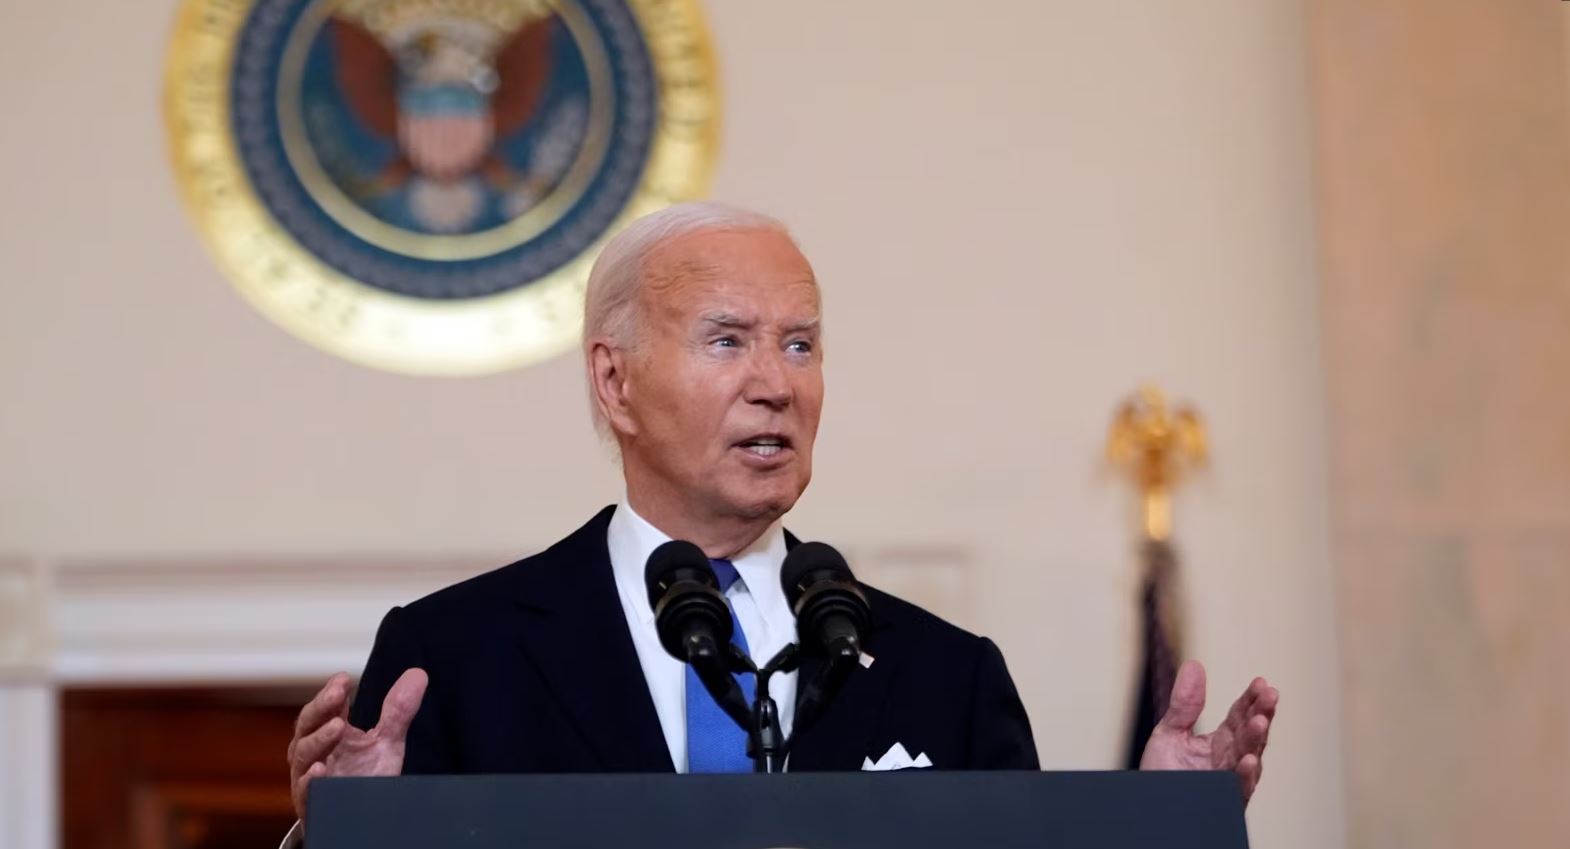 “Precedent i rrezikshëm”, Joe Biden kritikon vendimin e Gjykatës së Lartë për imunitetin presidencial